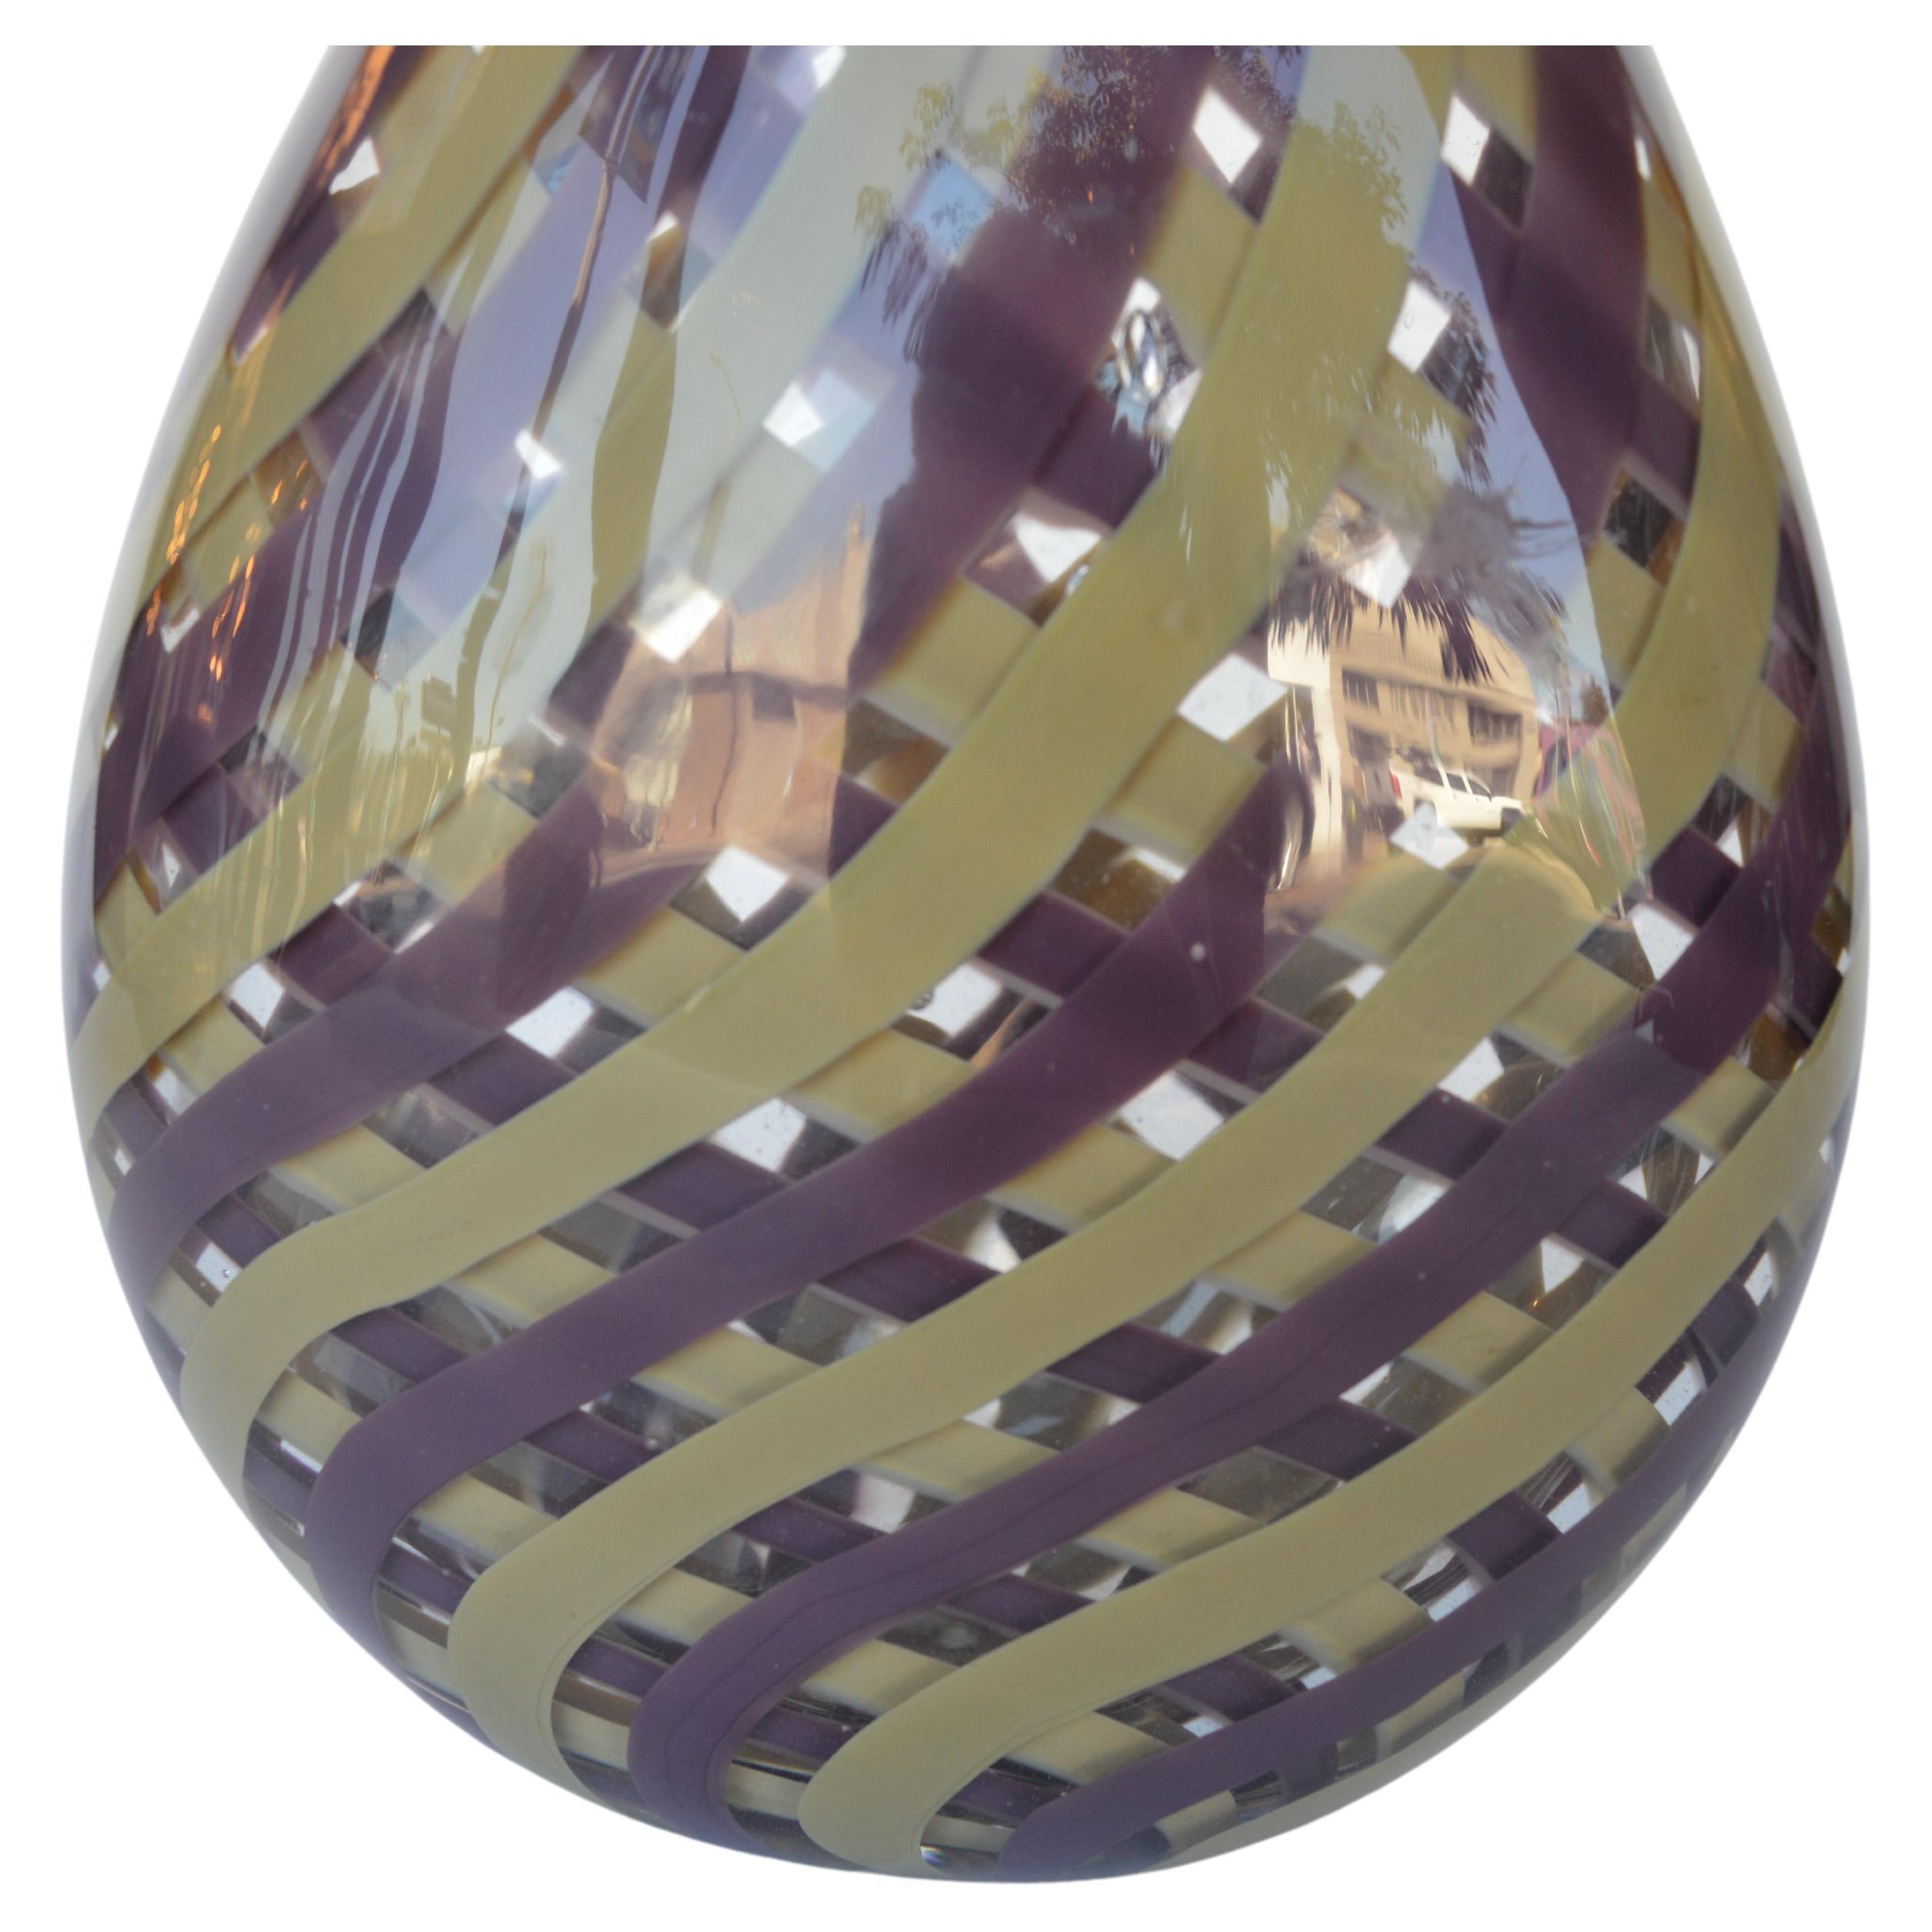 Vase aus italienischem Muranoglas, mundgeblasen, mit lila und senfgelben Streifen, die sich miteinander verflechten. Hergestellt in Italien, ca. 1970er Jahre. Eingravierte Muranomarke auf dem Sockel.